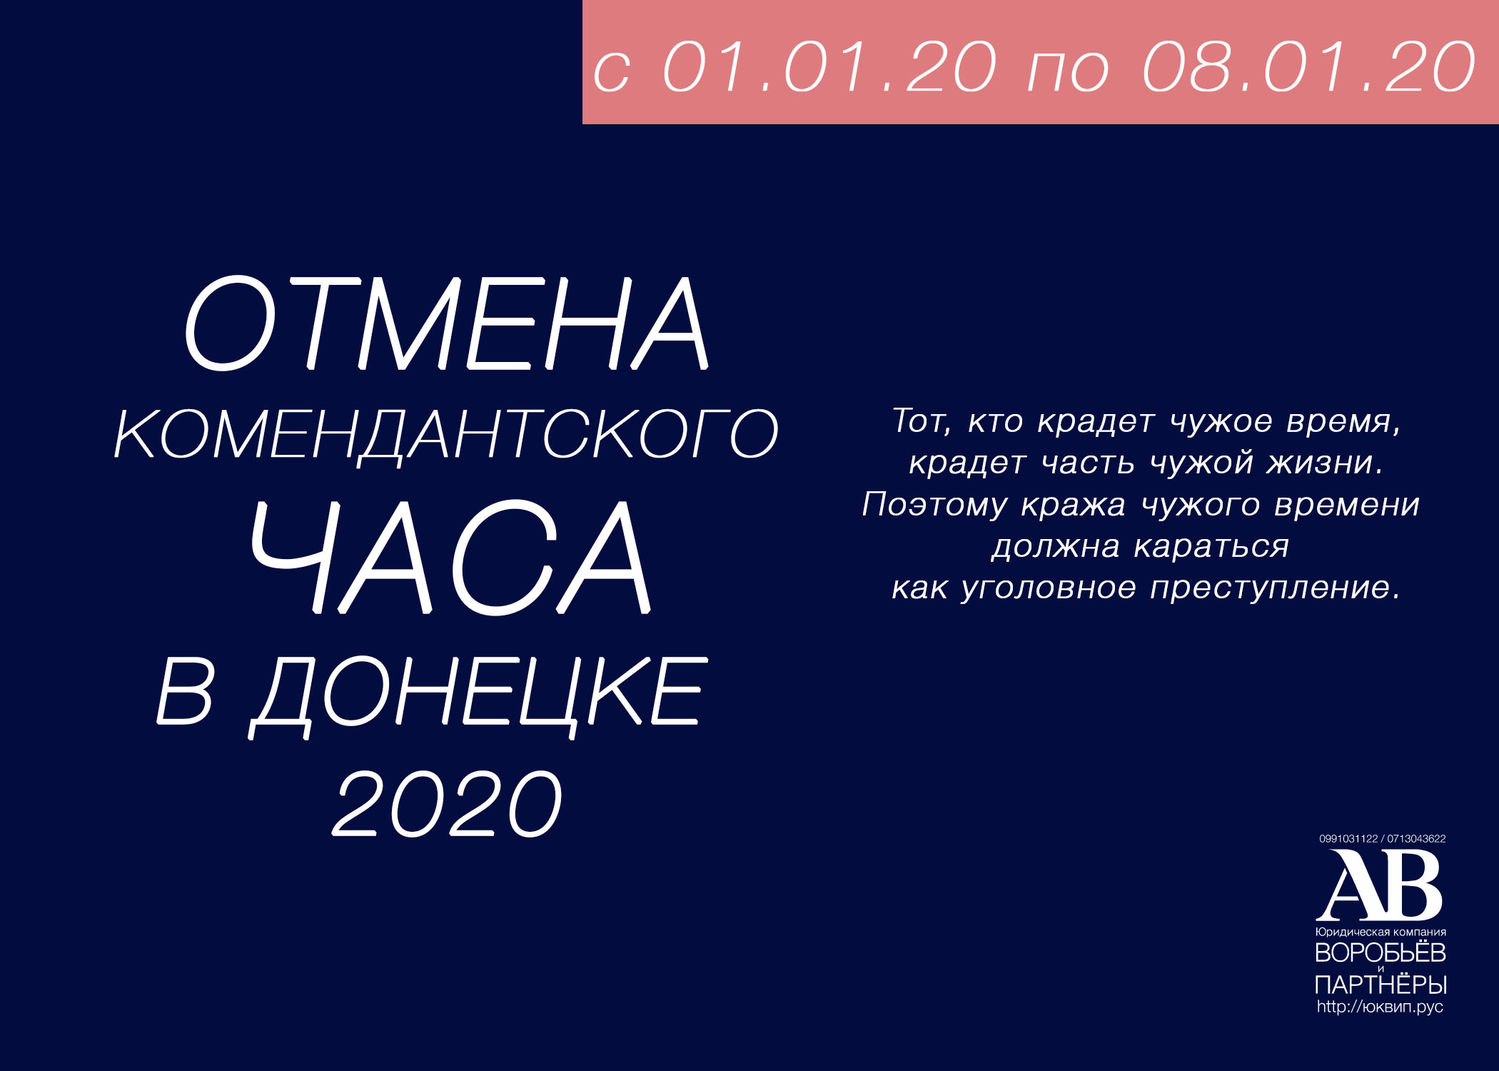 В Донецке отменили комендантский час в 2020 году